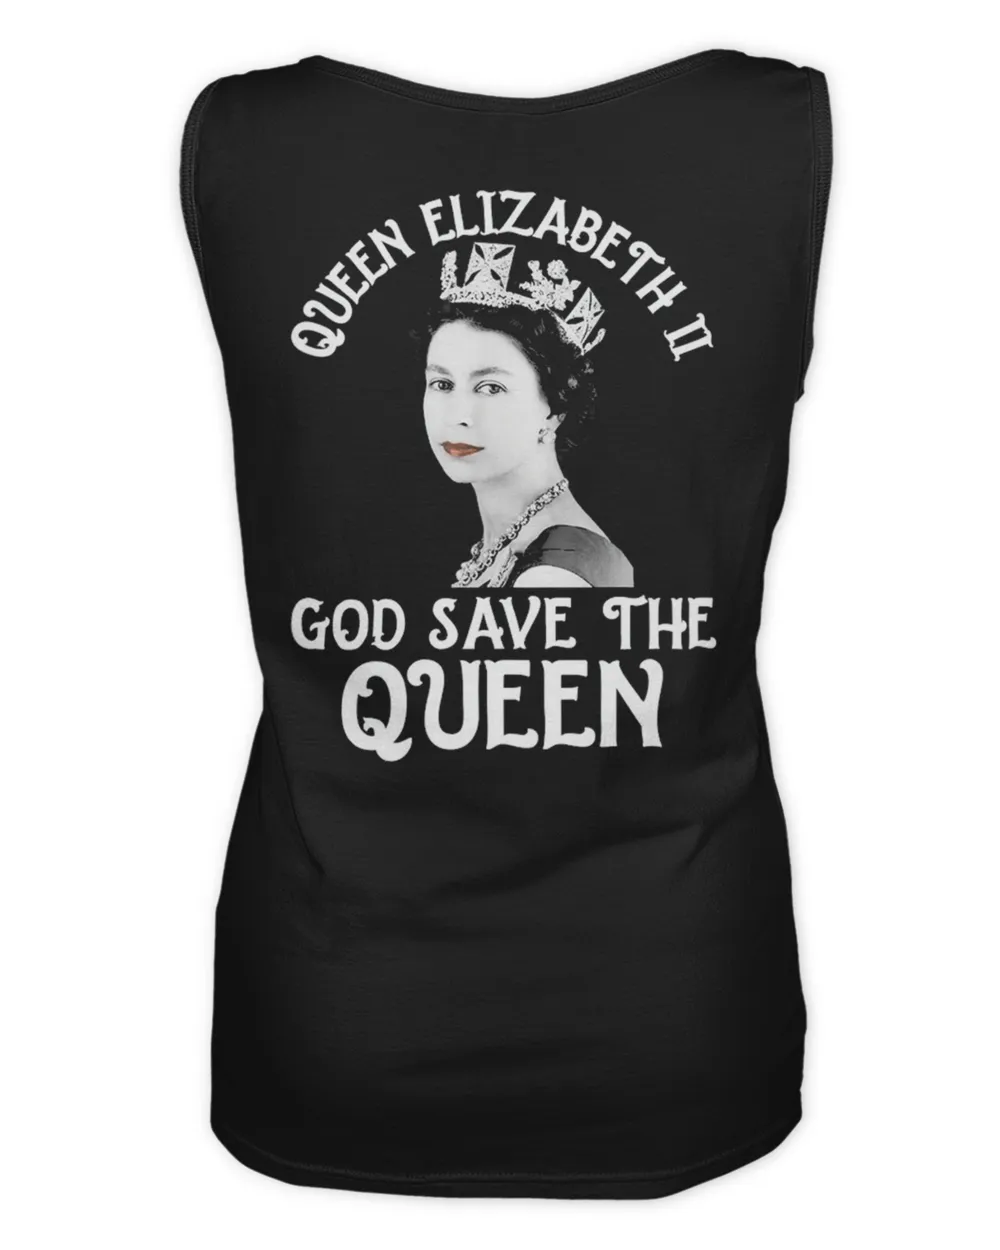 Rip Queen Elizabeth II God Save The Queen 1926-2022 Shirt